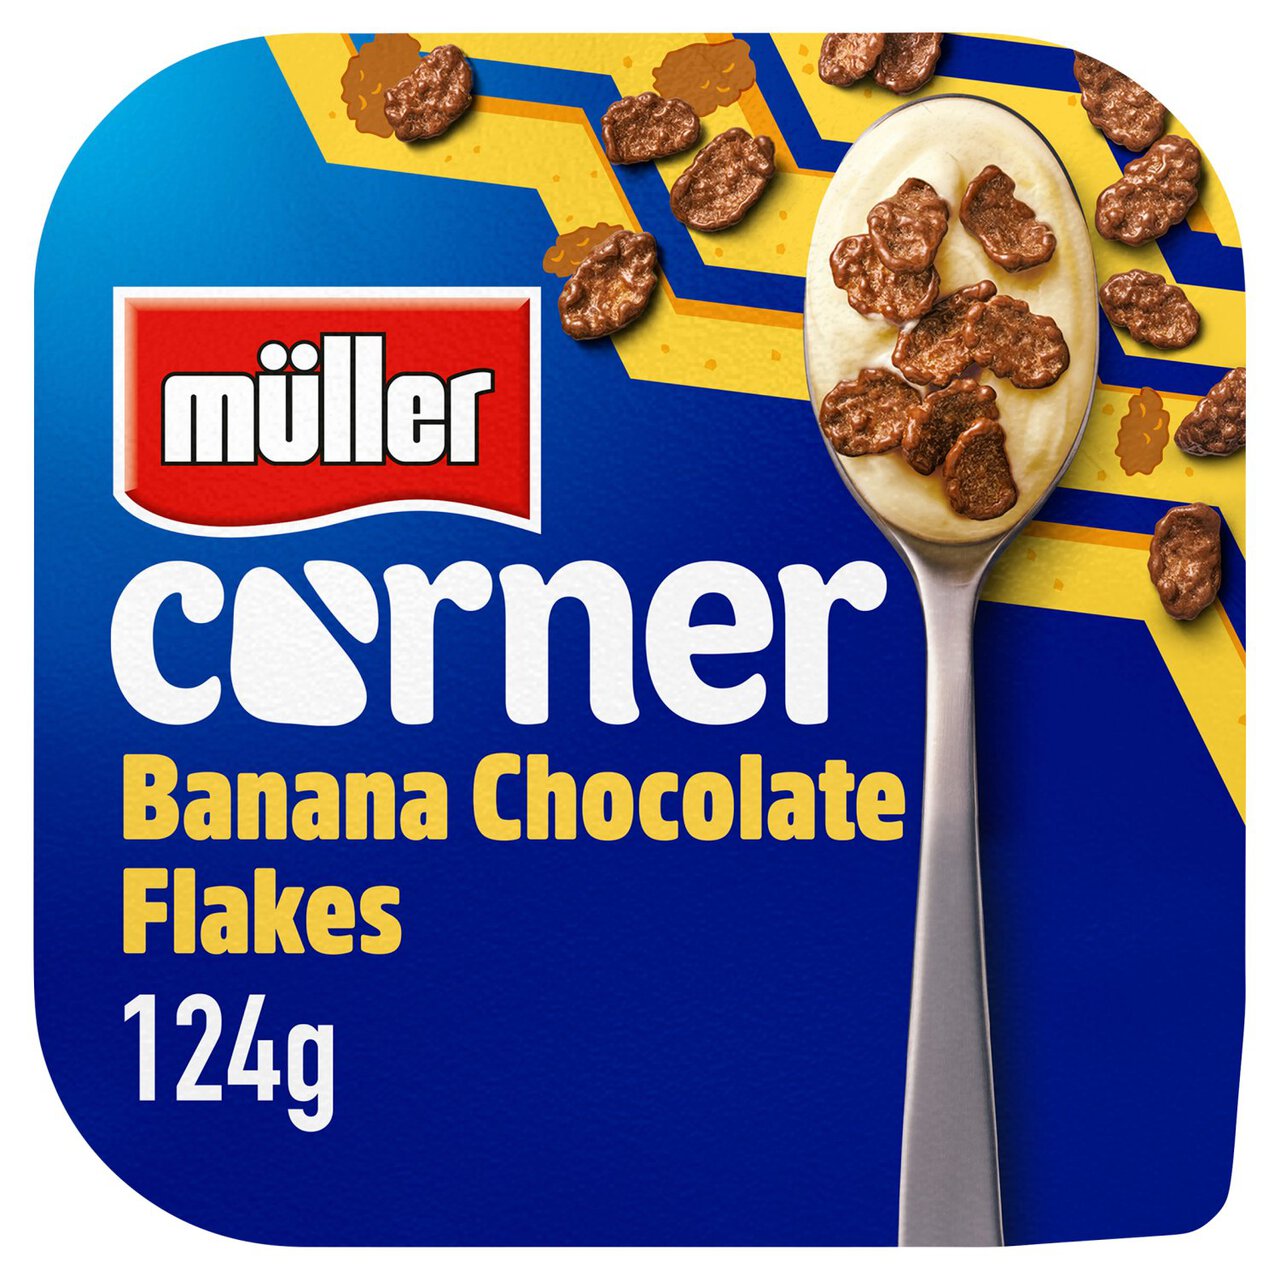 Muller Corner Banana Yogurt with Chocolate Flakes 124g